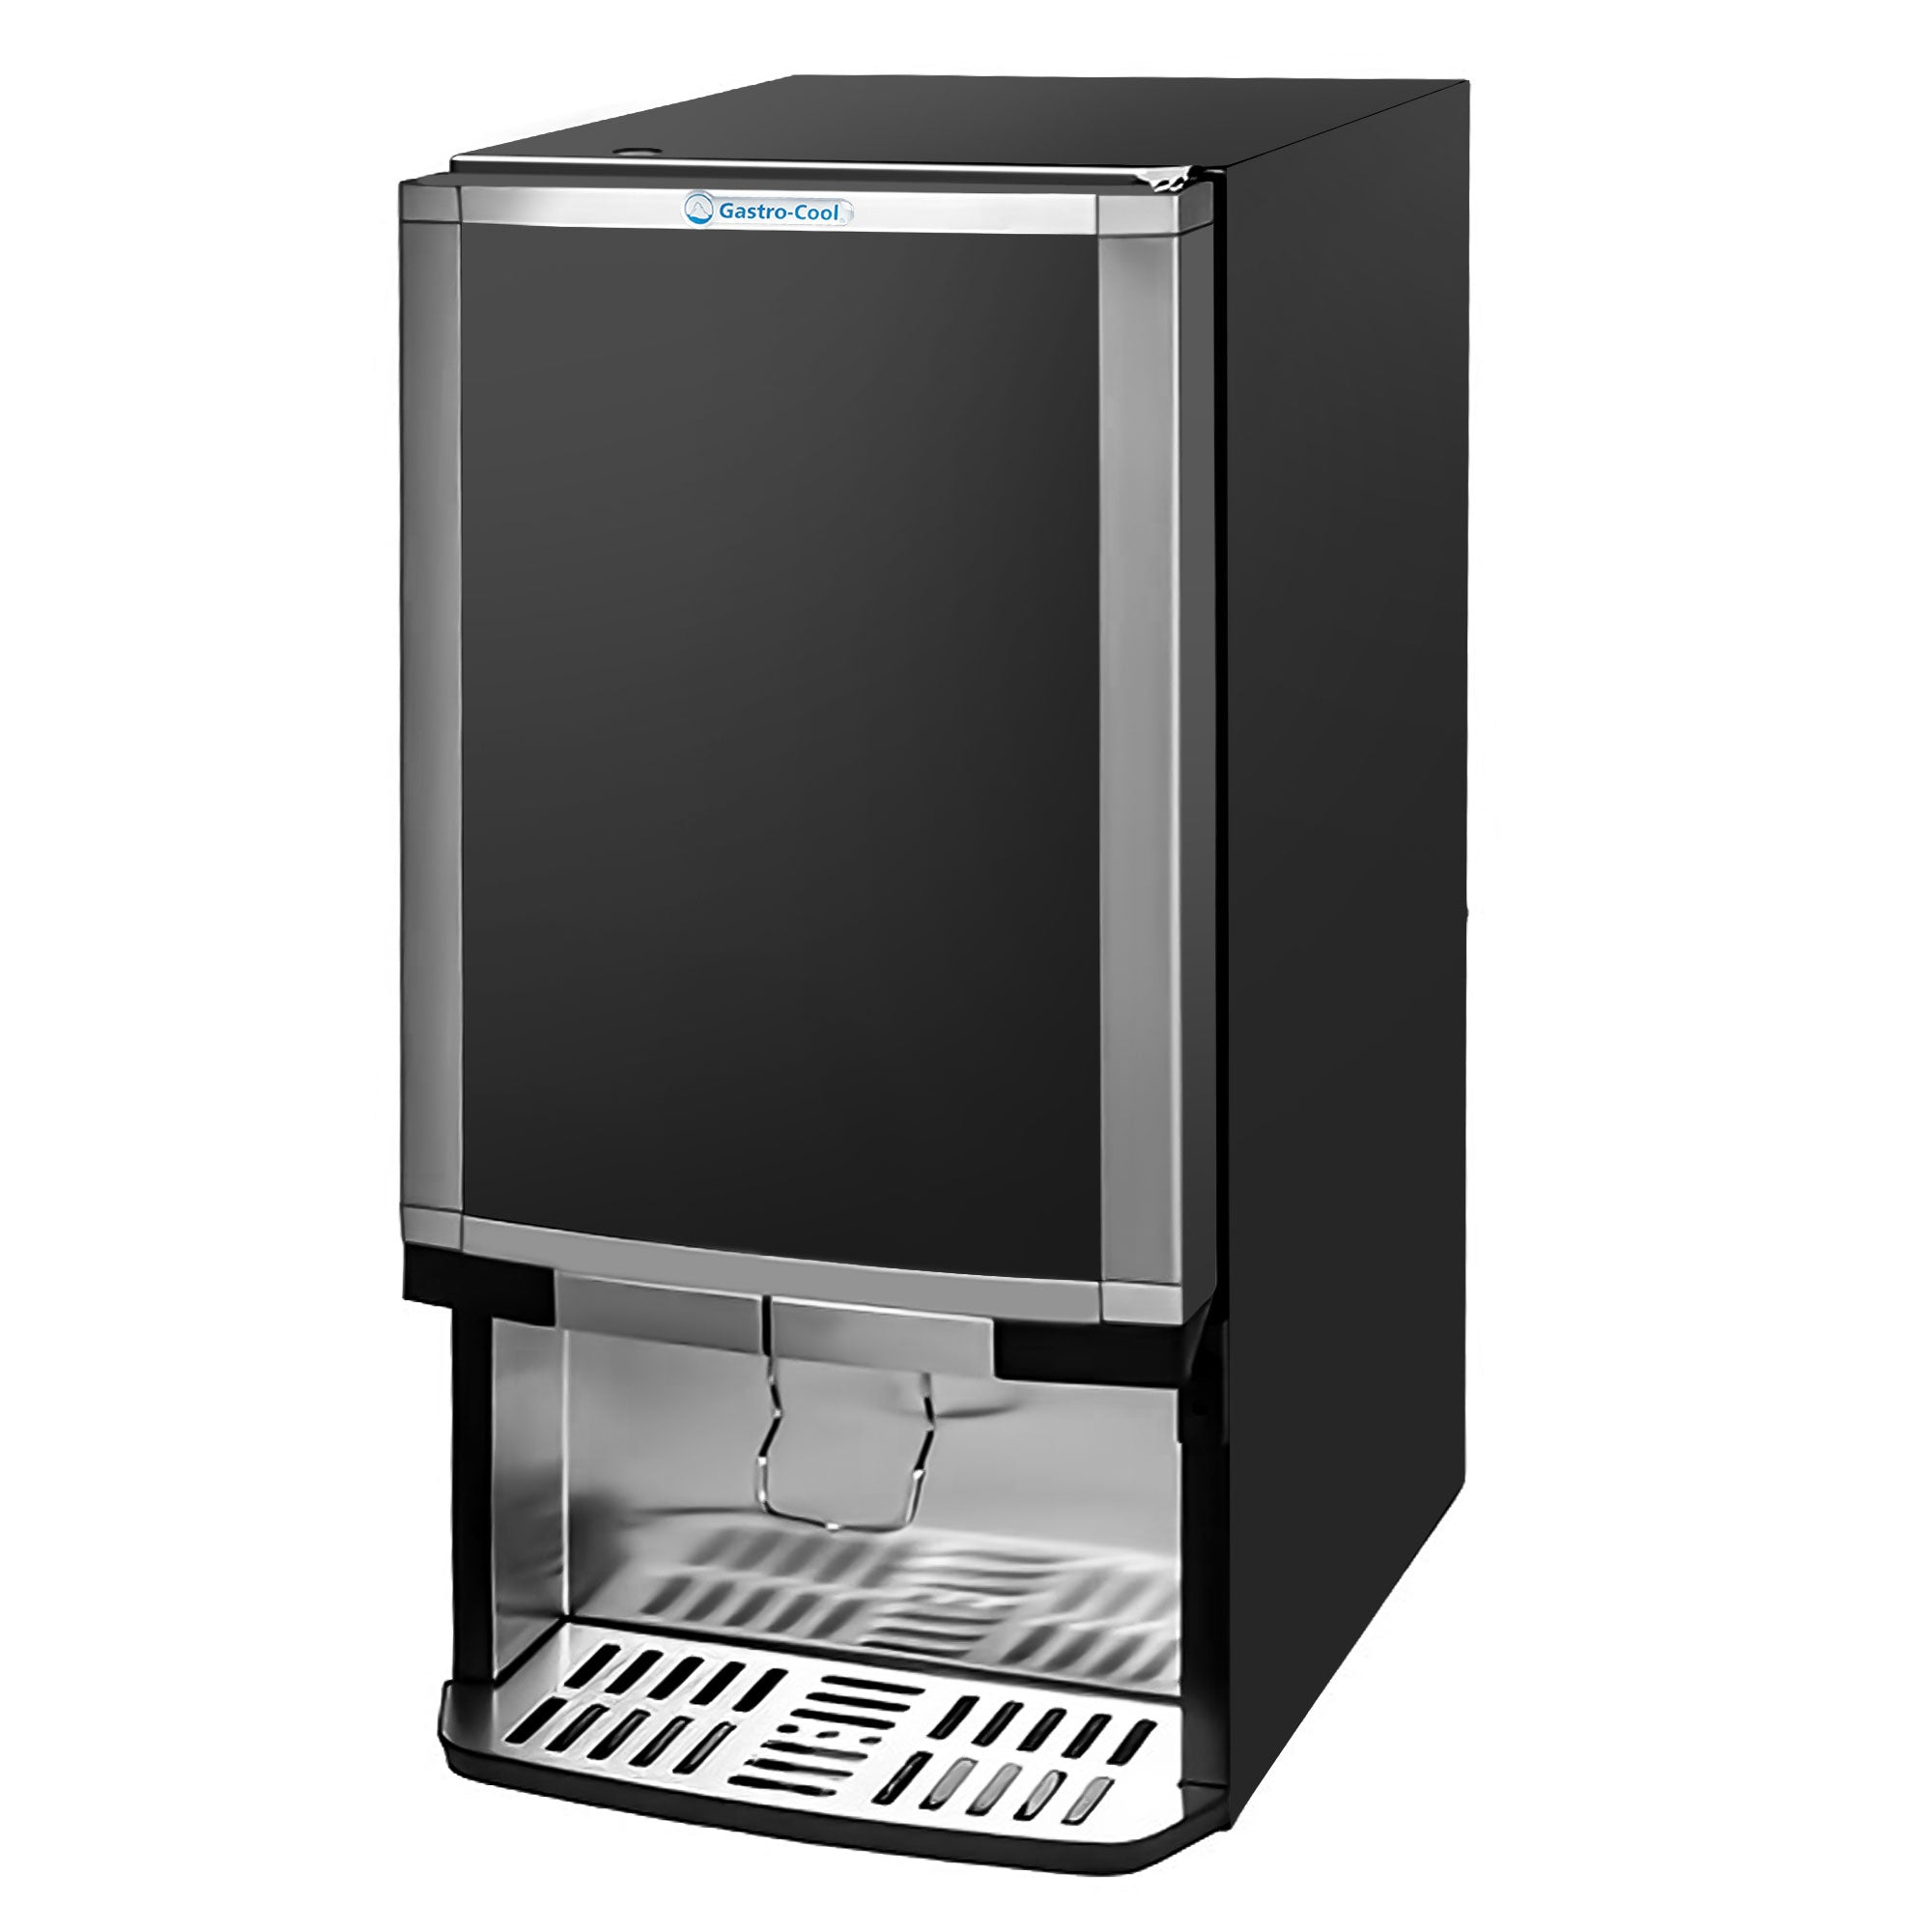 Dispenser-køleskab - 48 liter - sort